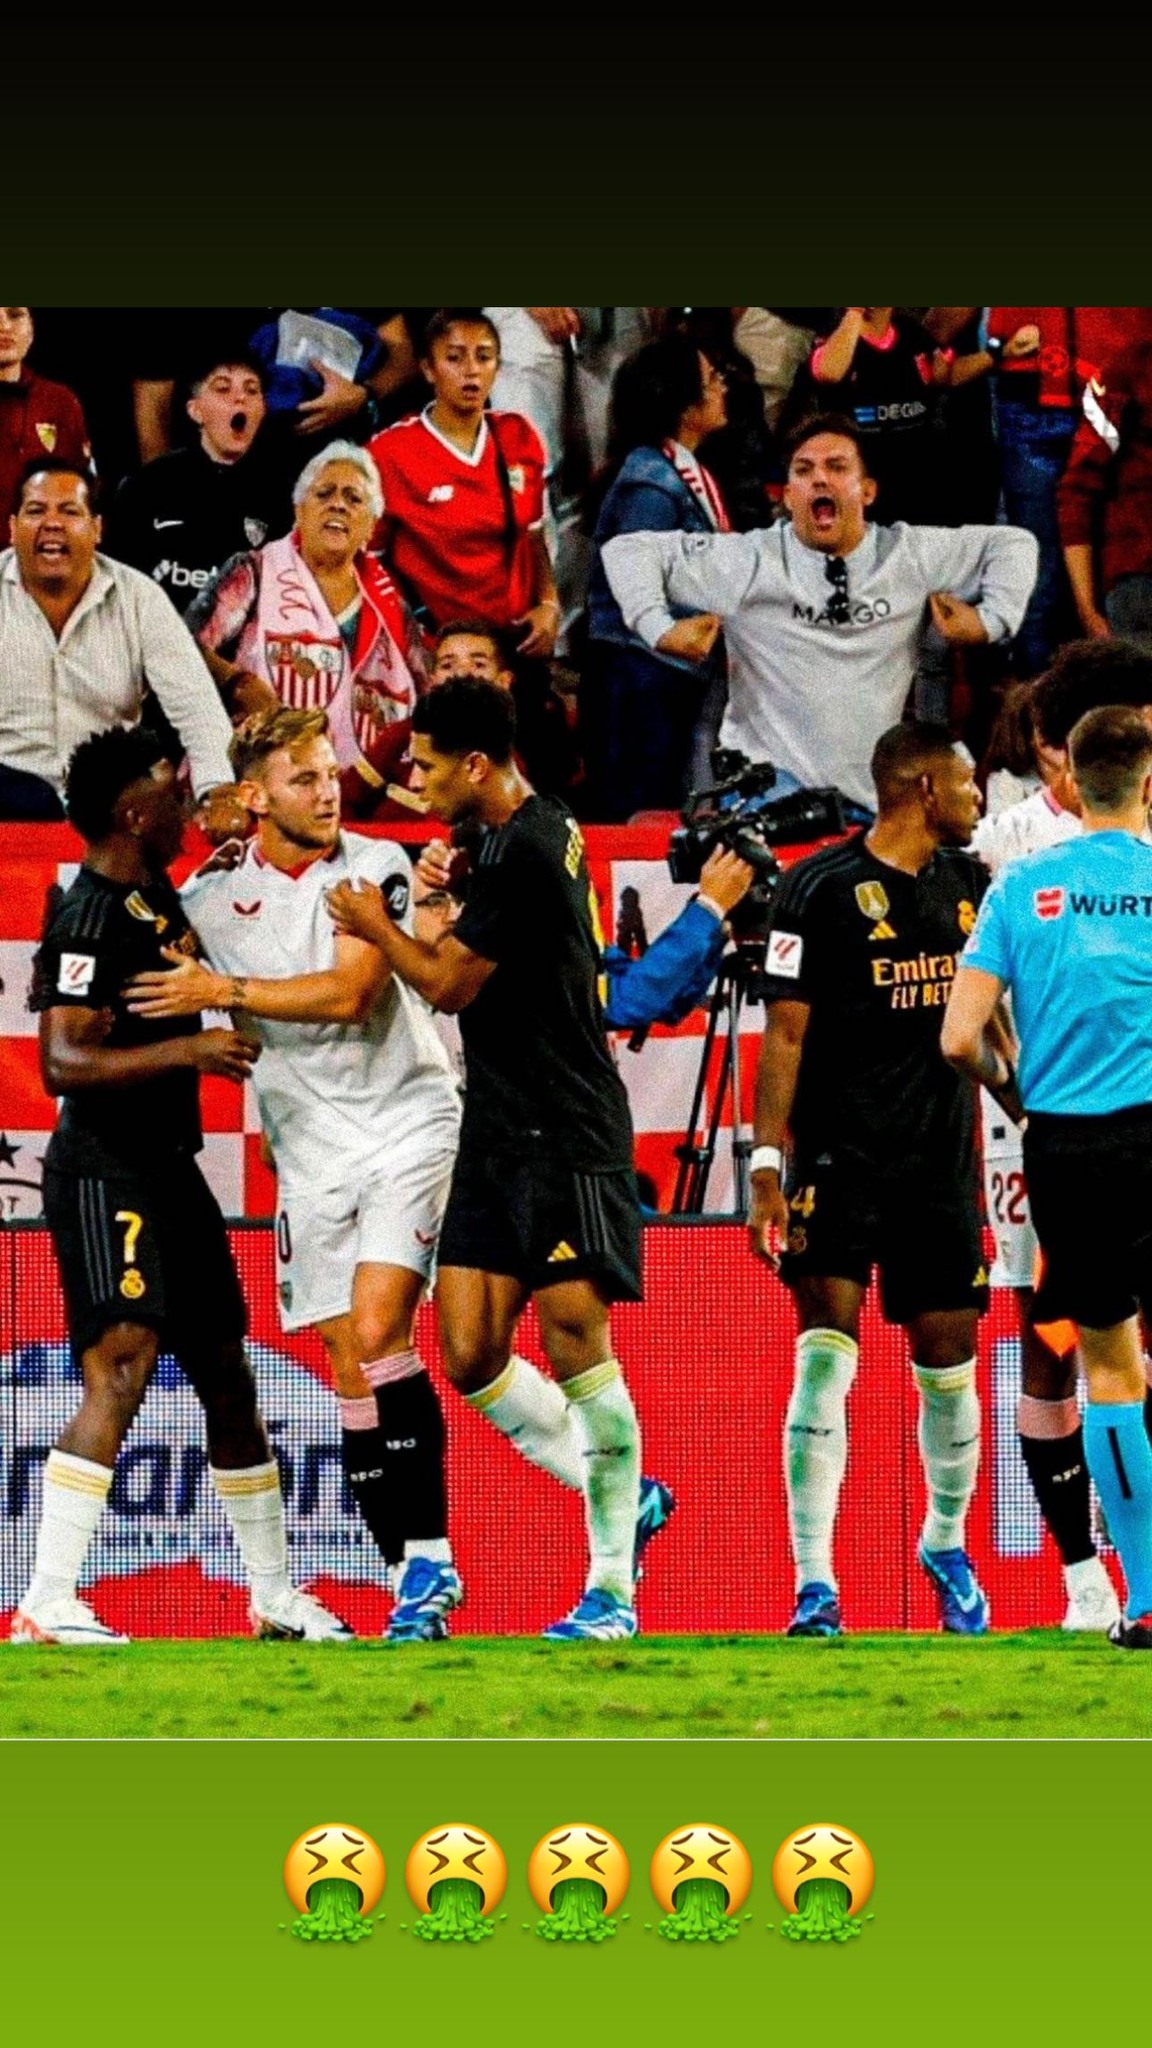 Der Star von Real Madrid teilte ein Bild eines Anhängers, der ihn rassistisch beleidigte